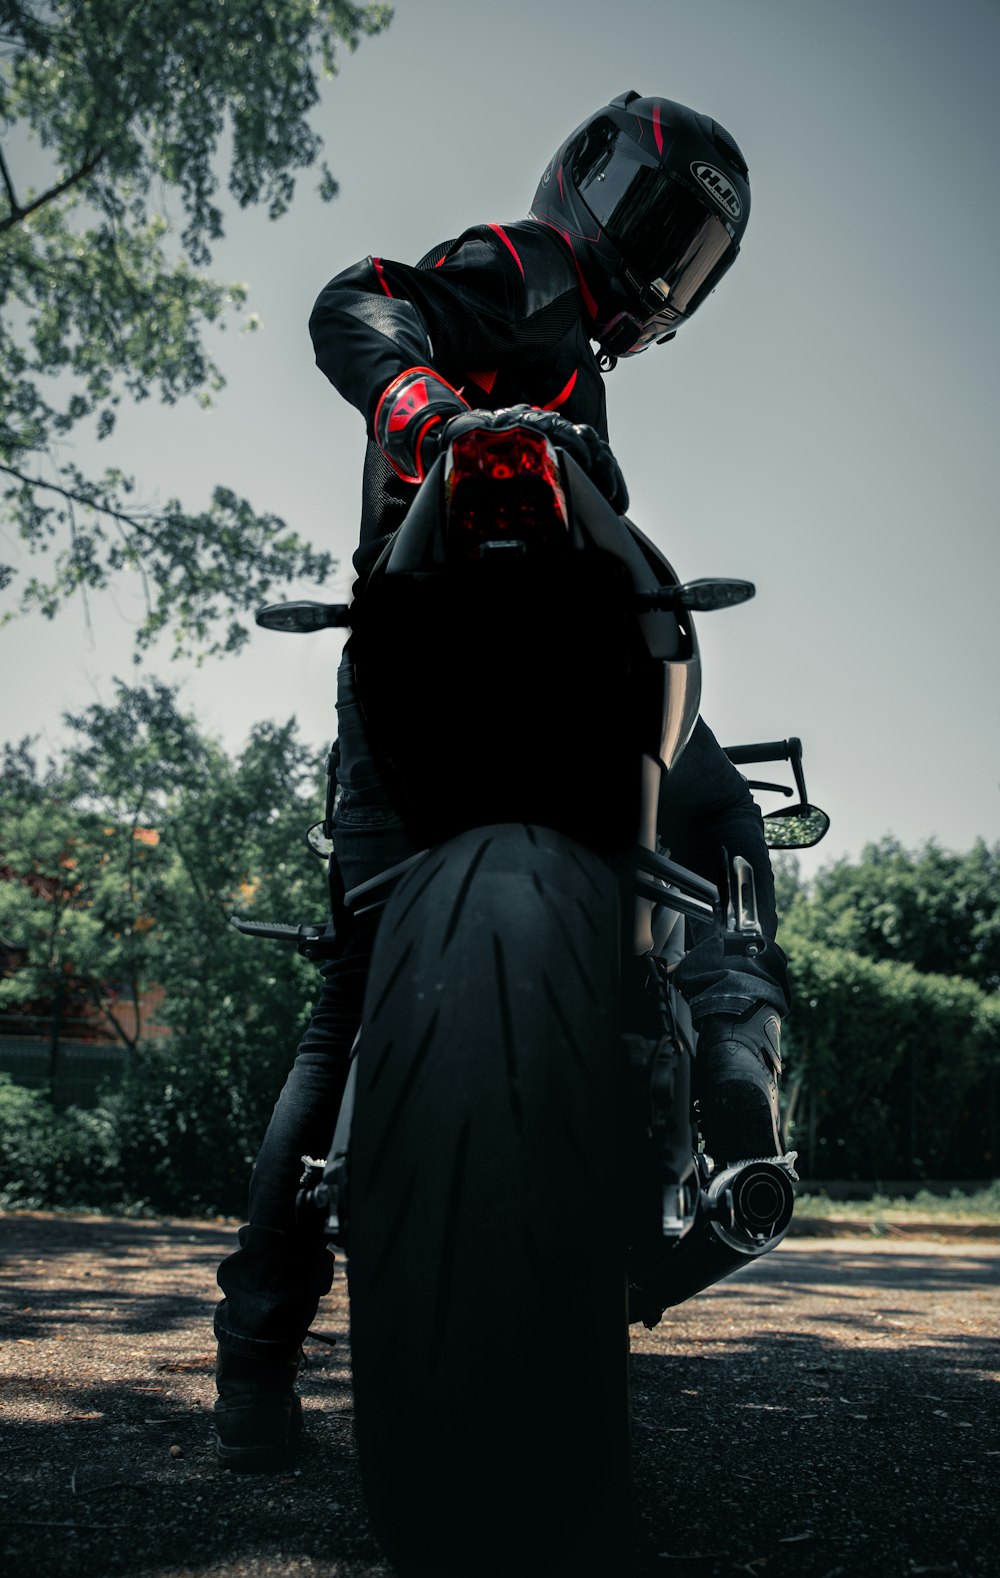 검은 가죽 재킷을 입은 남자 타고 검은 오토바이